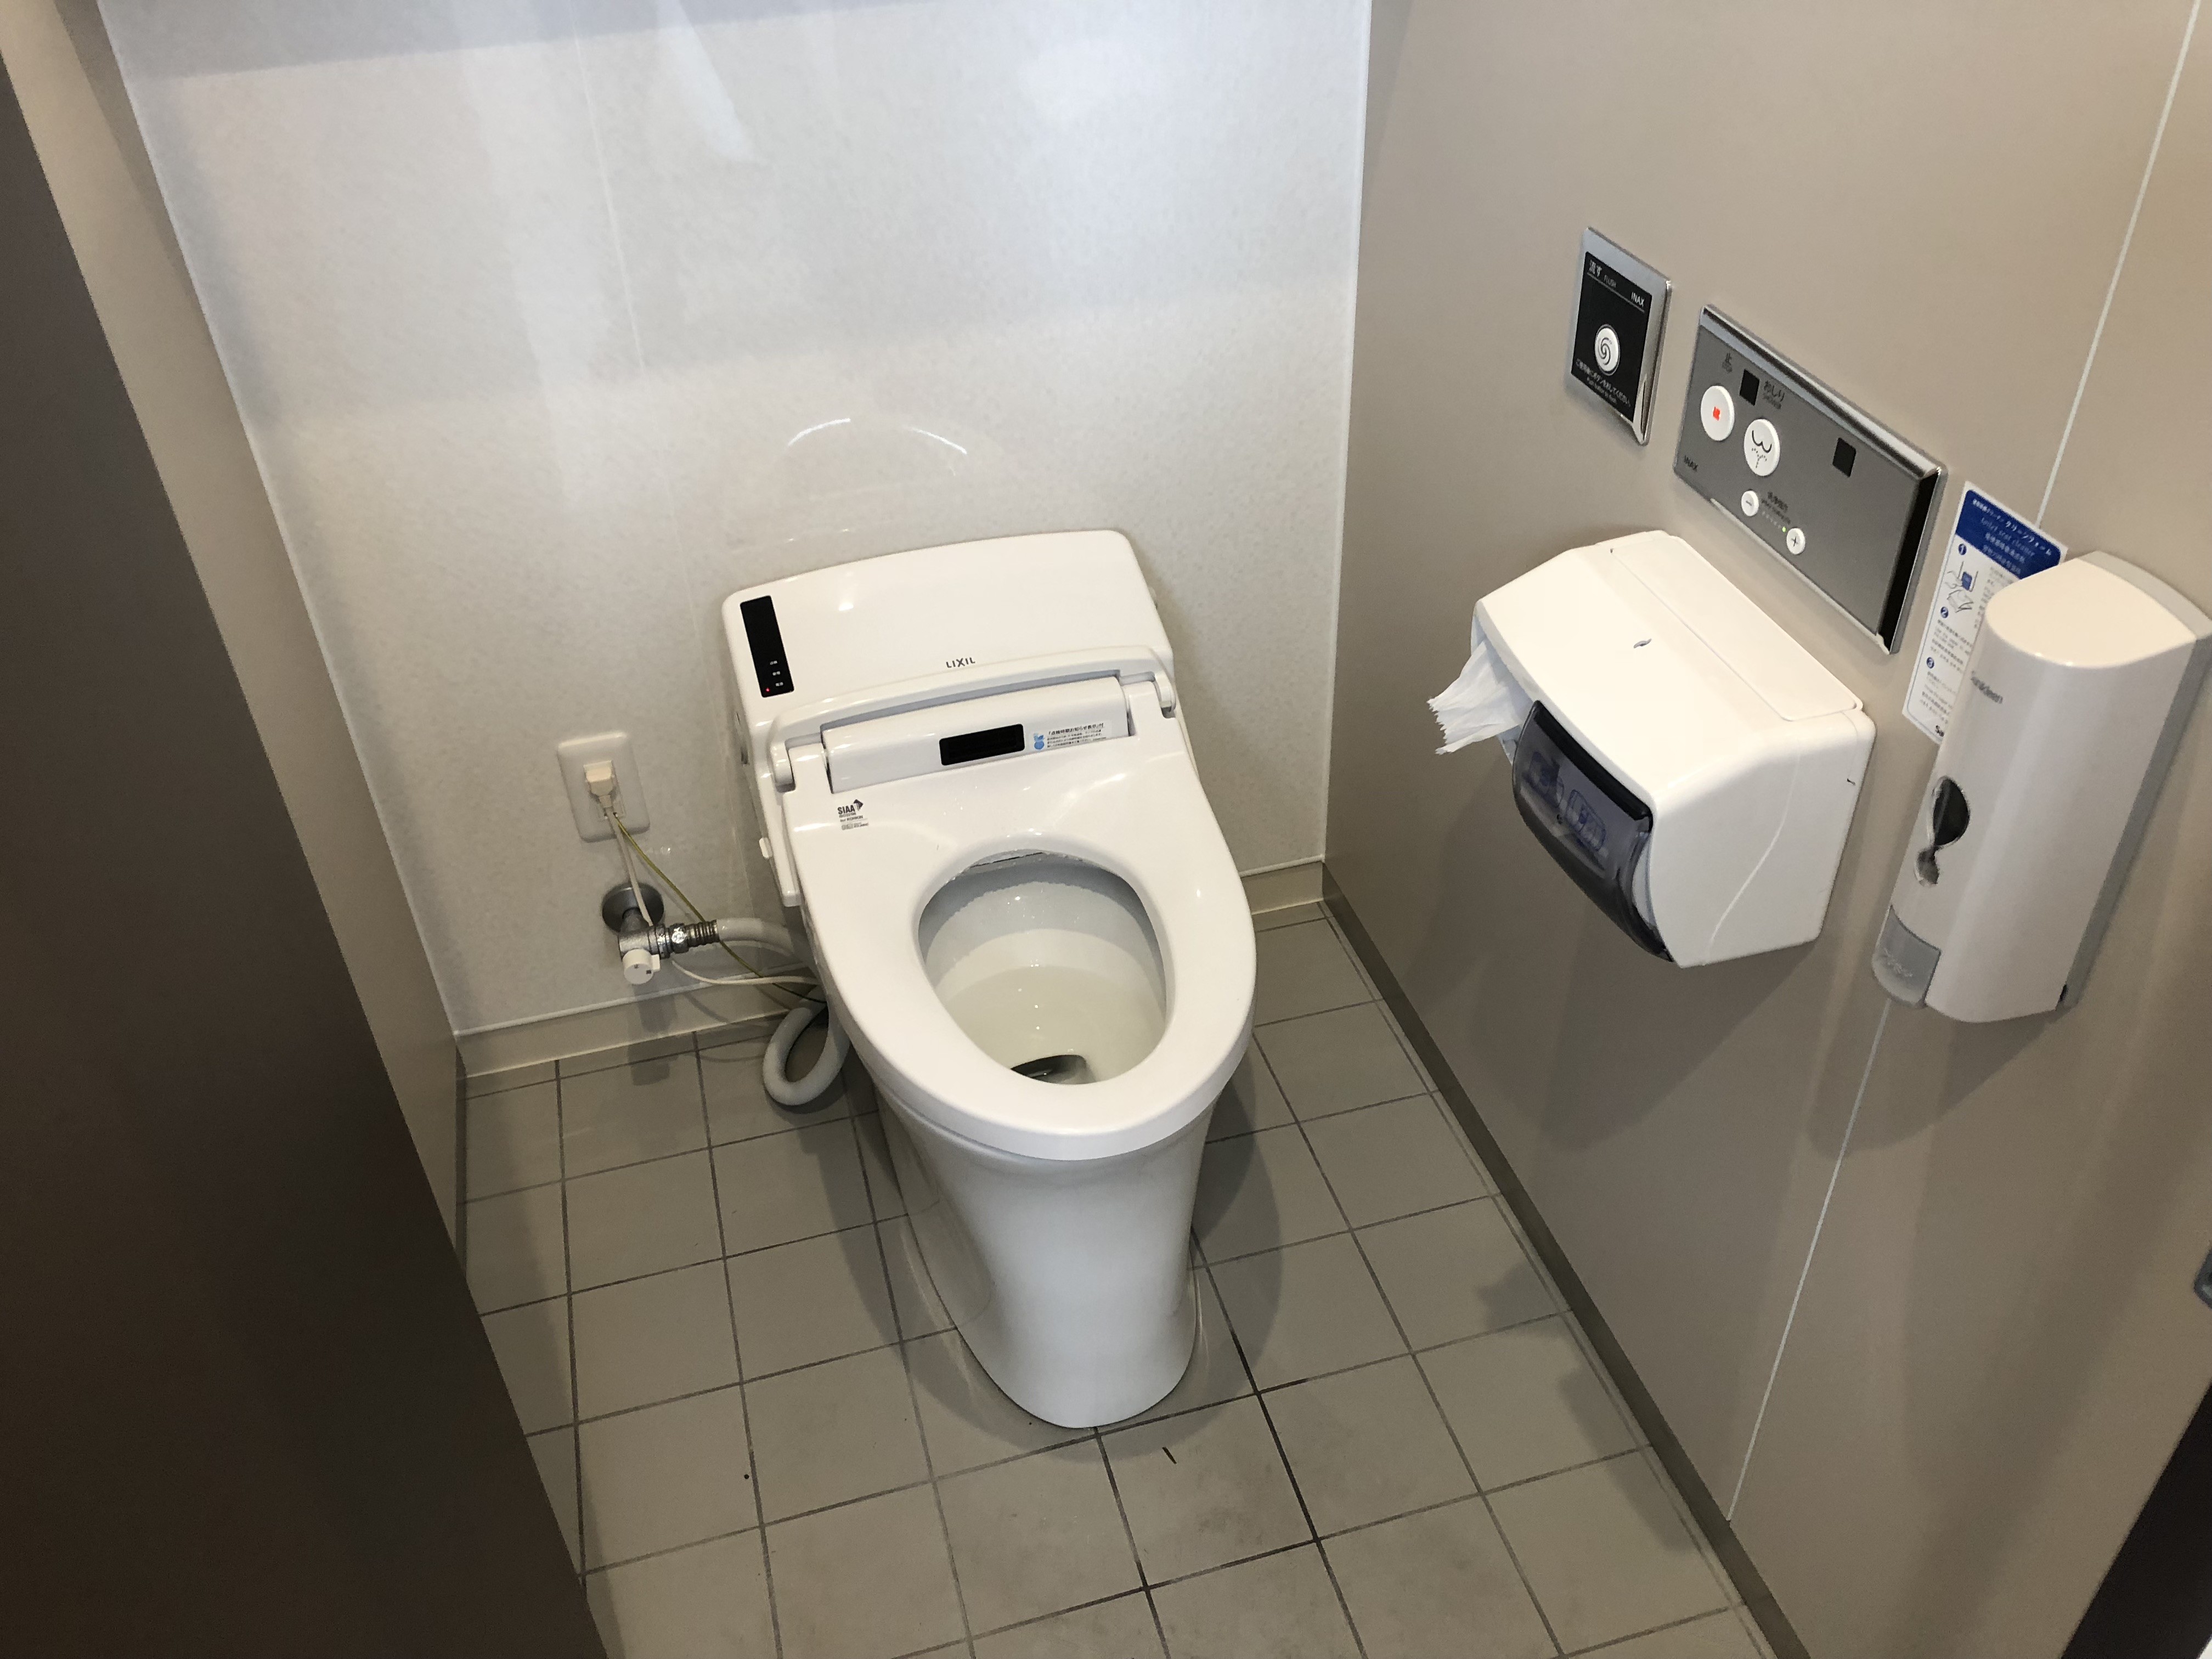 草津温泉スキー場天狗山チケットセンター内のトイレを改修しました。 草津温泉スキー場スタッフブログ